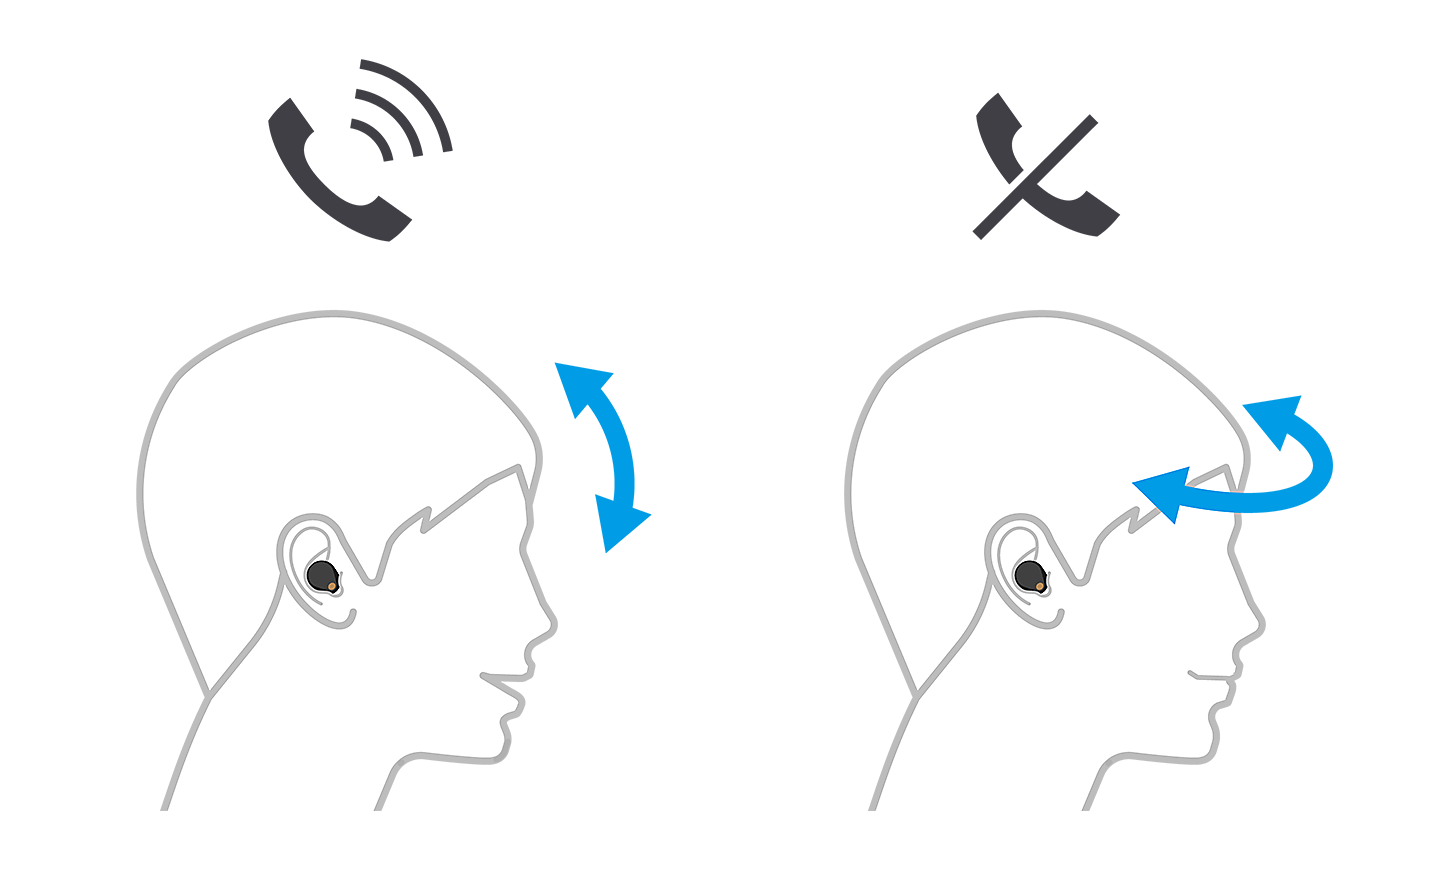 Obrázok dvoch hláv, tá vľavo prijíma hovor so šípkami nahor a nadol, tá vpravo ho odmieta so šípkami doľava a doprava